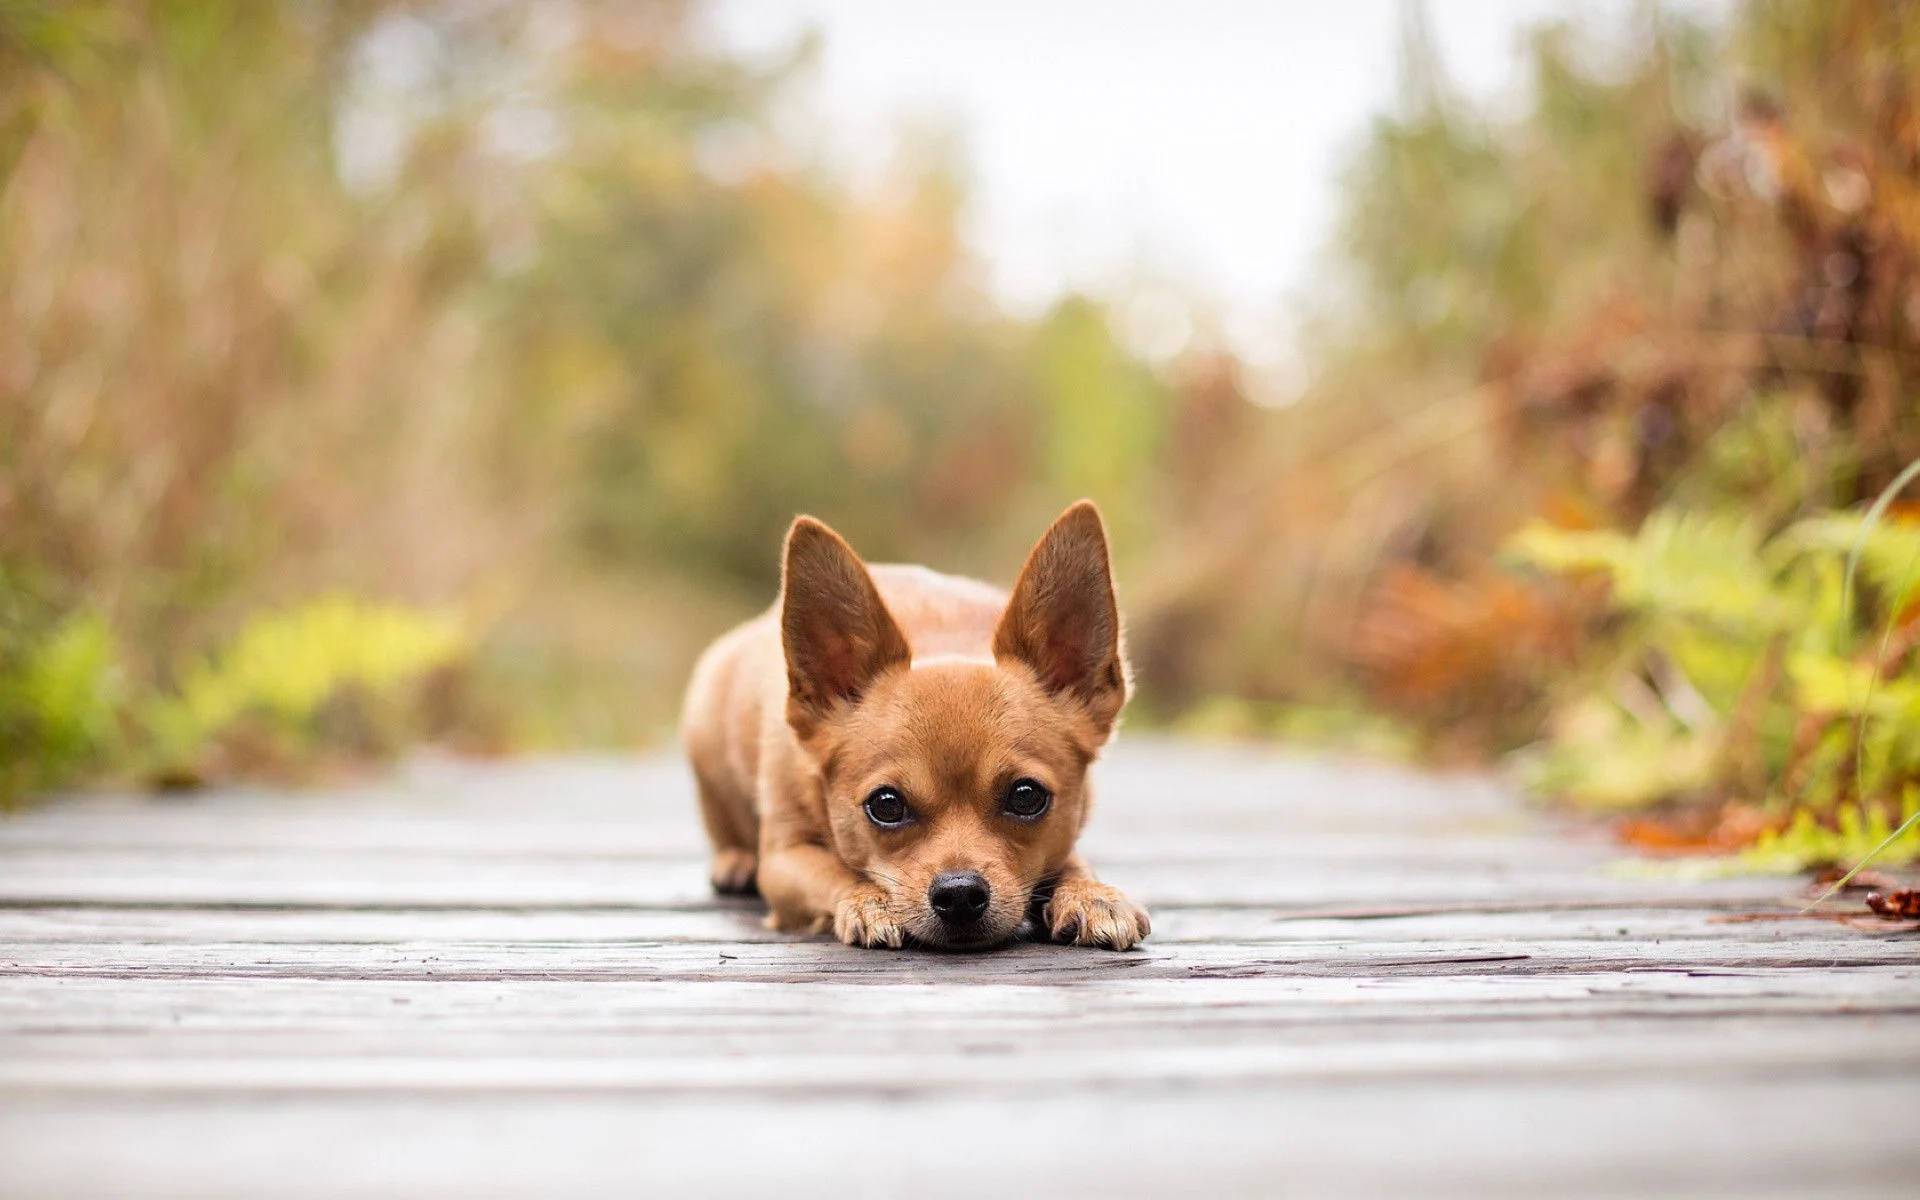 Brown Puppy Dog In Wooden Bridge Background